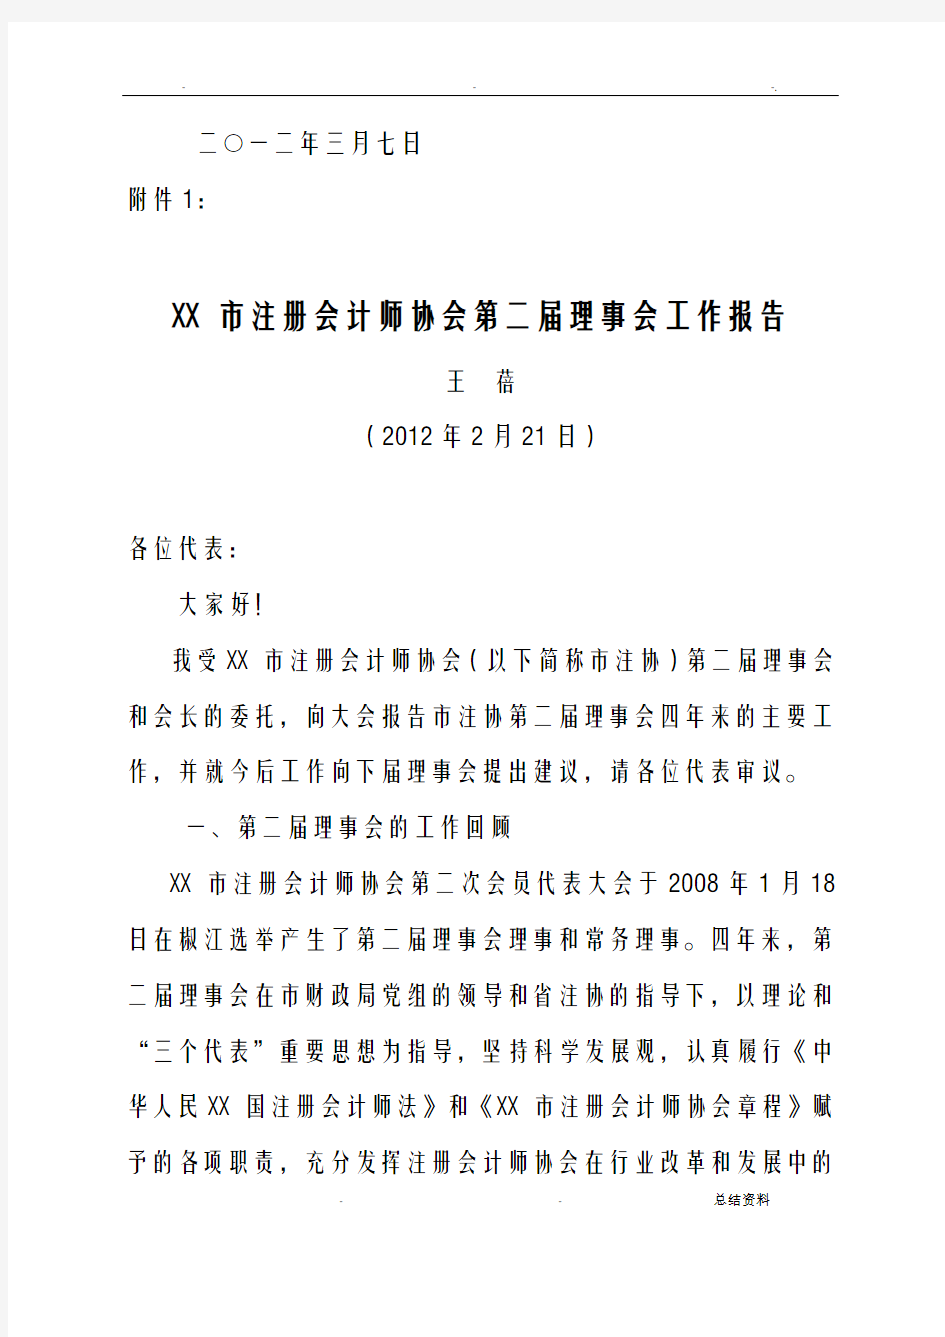 台州市注册会计师协会文件